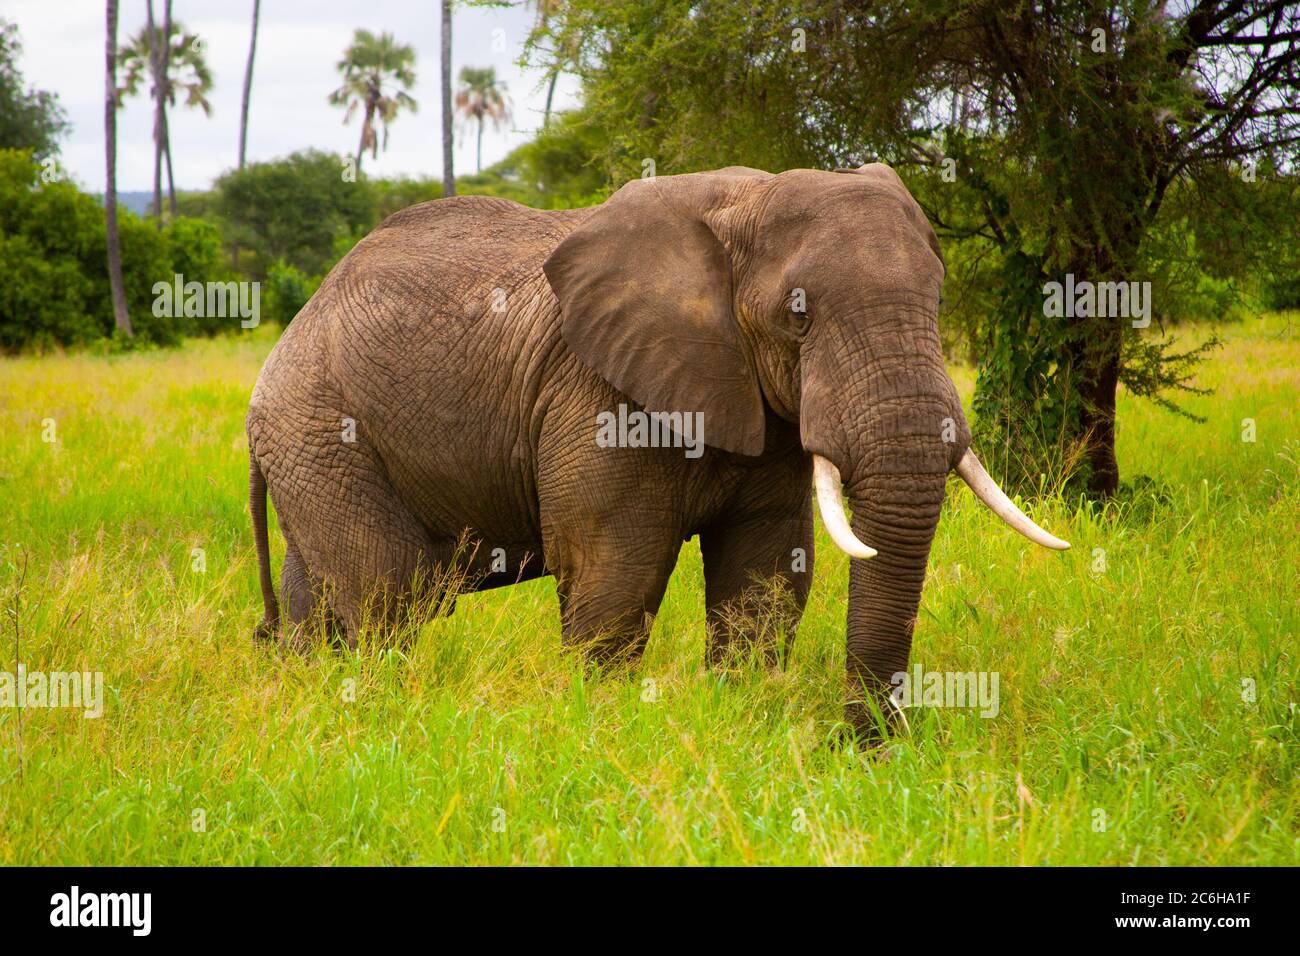 Éléphant de Bush africain isolé (Loxodonta africana) photographié dans la nature Banque D'Images